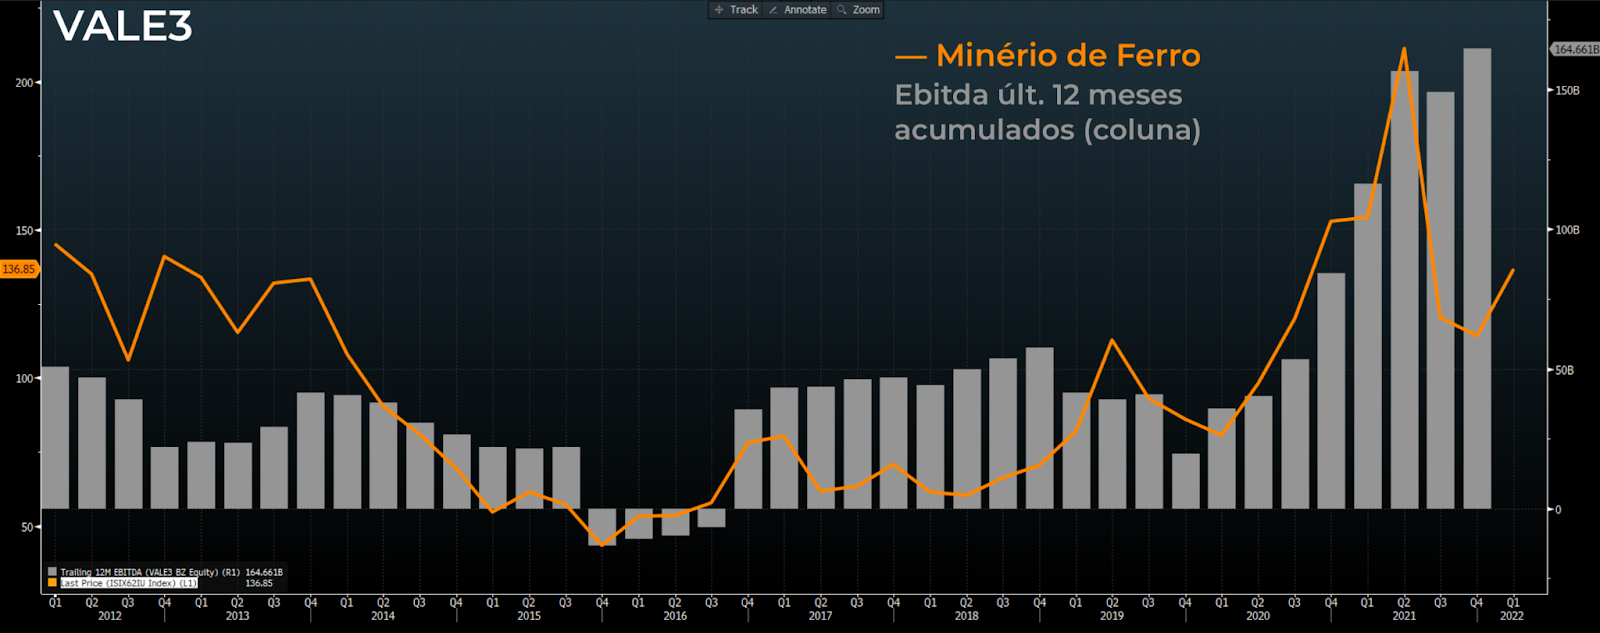 Gráfico apresenta preço minério de ferro (linha laranja) e Ebitda últimos 12 meses acumulados (coluna cinza). 